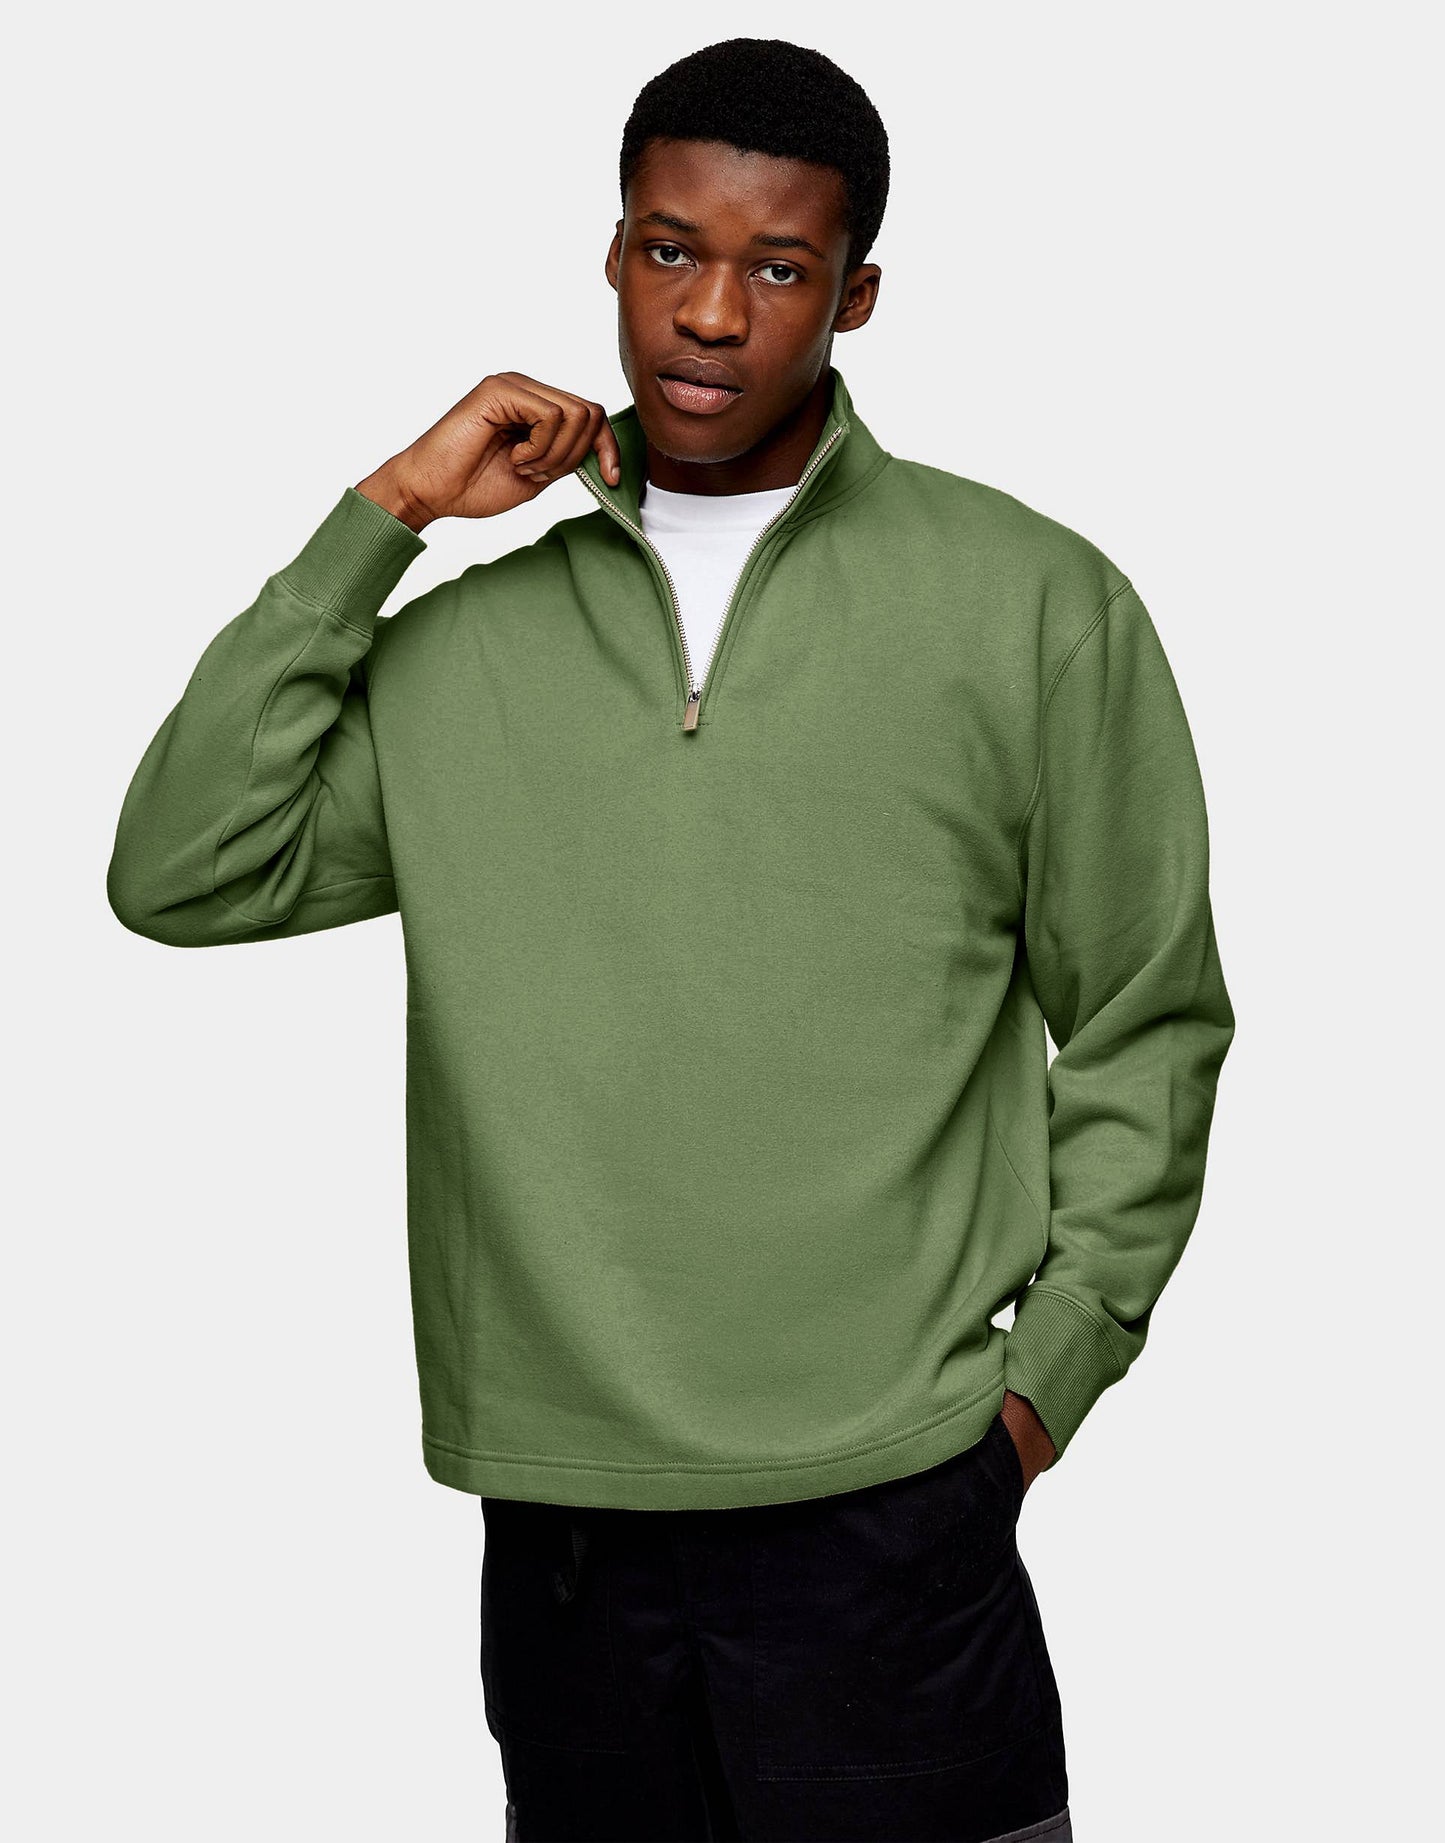 Hemsters Pista Green Sweatshirt For Mens